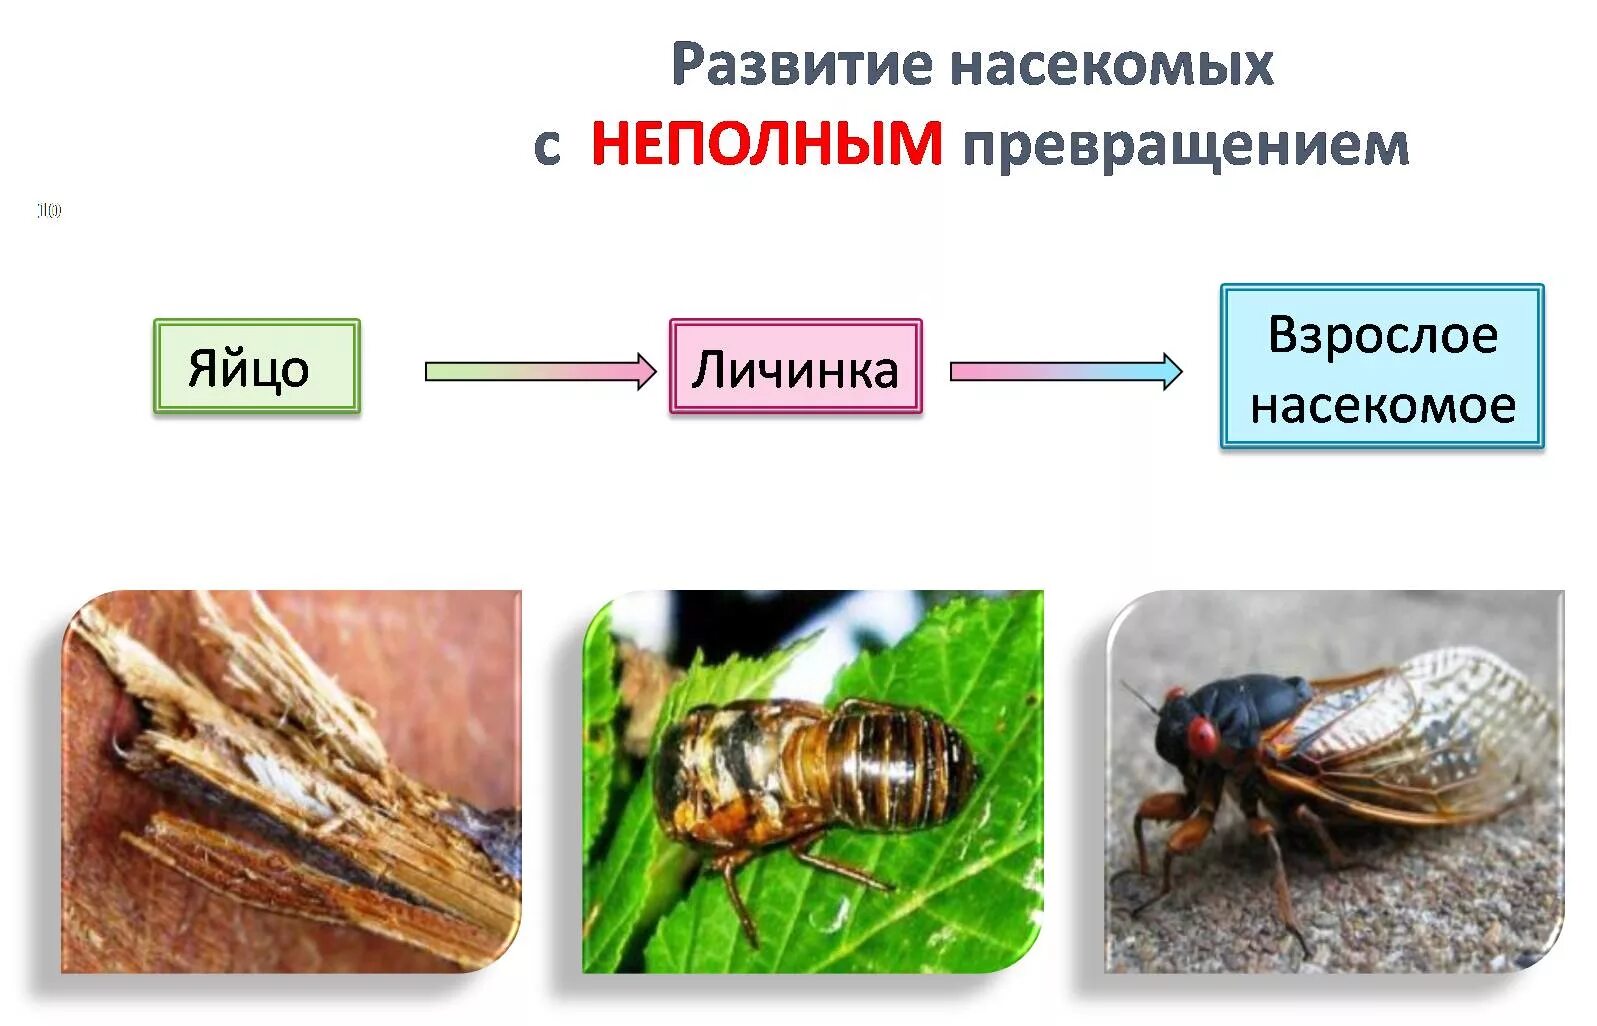 Развитие с неполным метаморфозом у насекомых. Размножение насекомых с полным и неполным превращением. Развитие с неполным превращением личинка. Схема развития насекомых с неполным превращением.